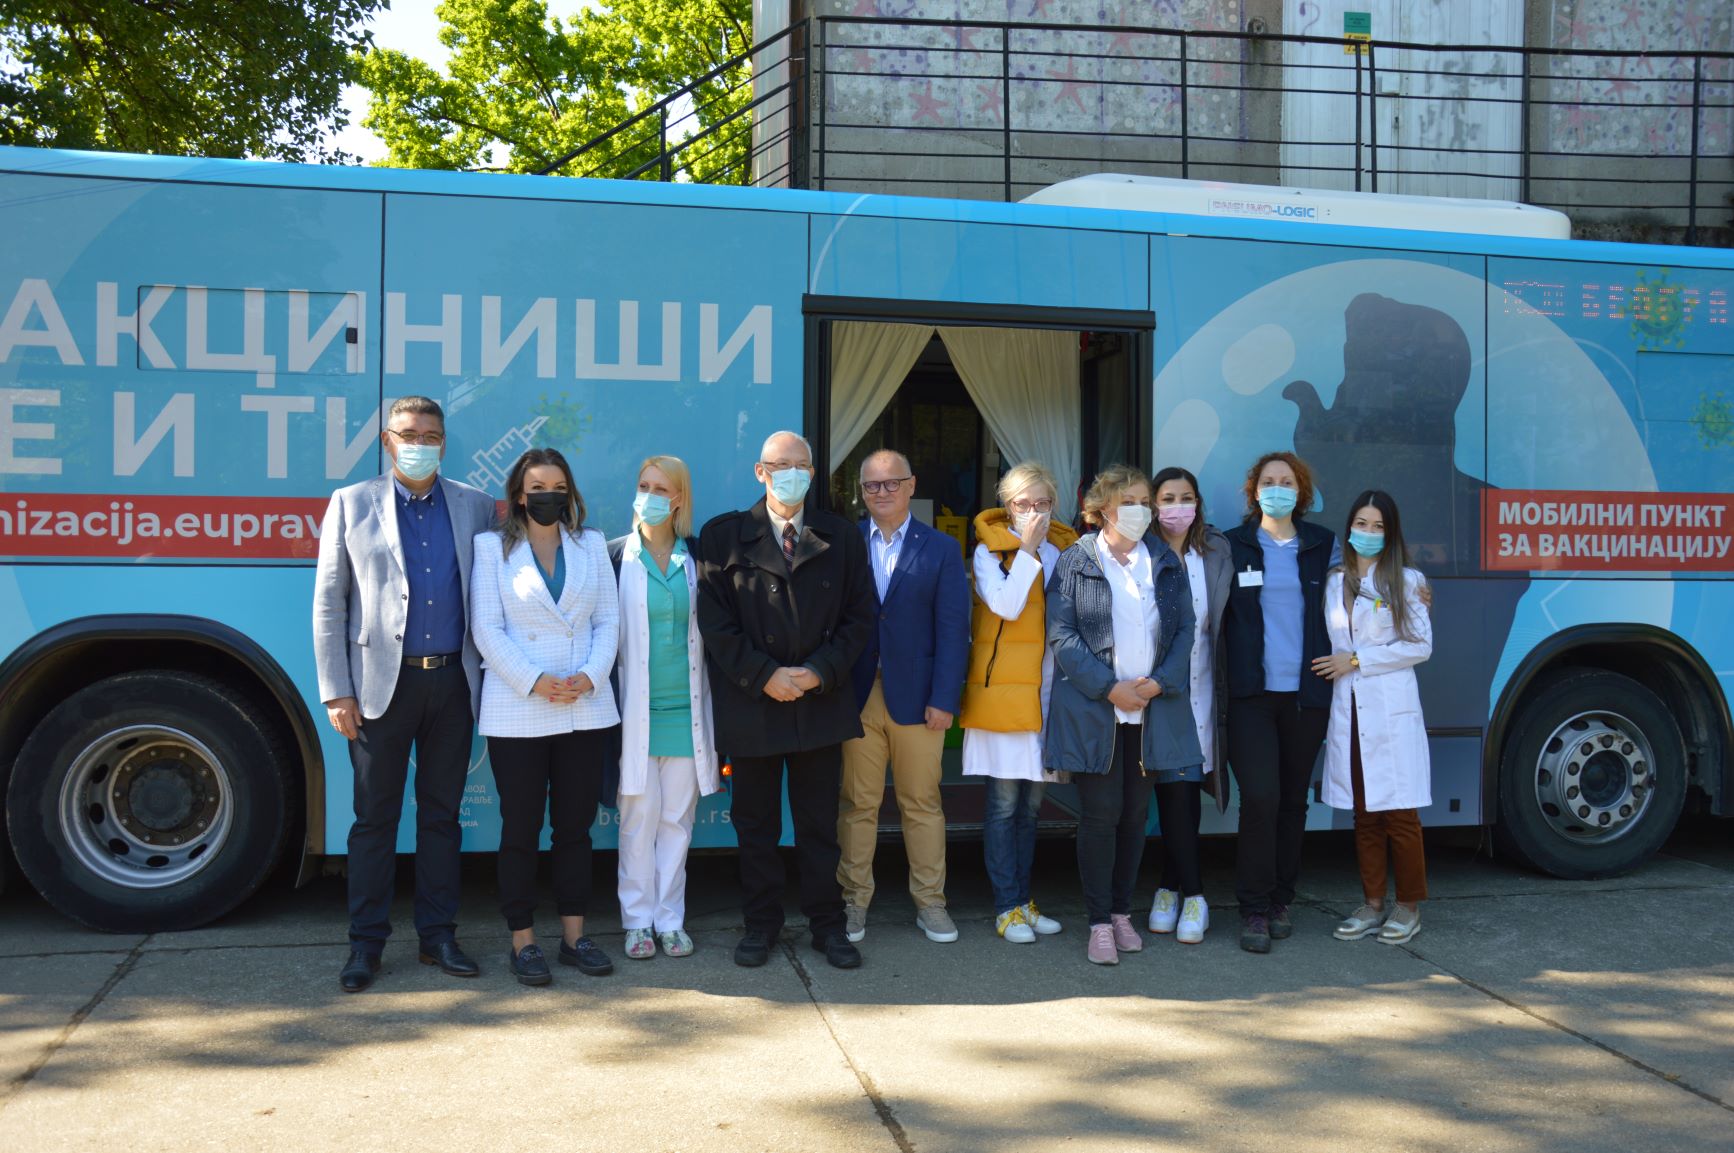 Vakcinacija u Autobusu na Adi Ciganliji - Opština Čukarica